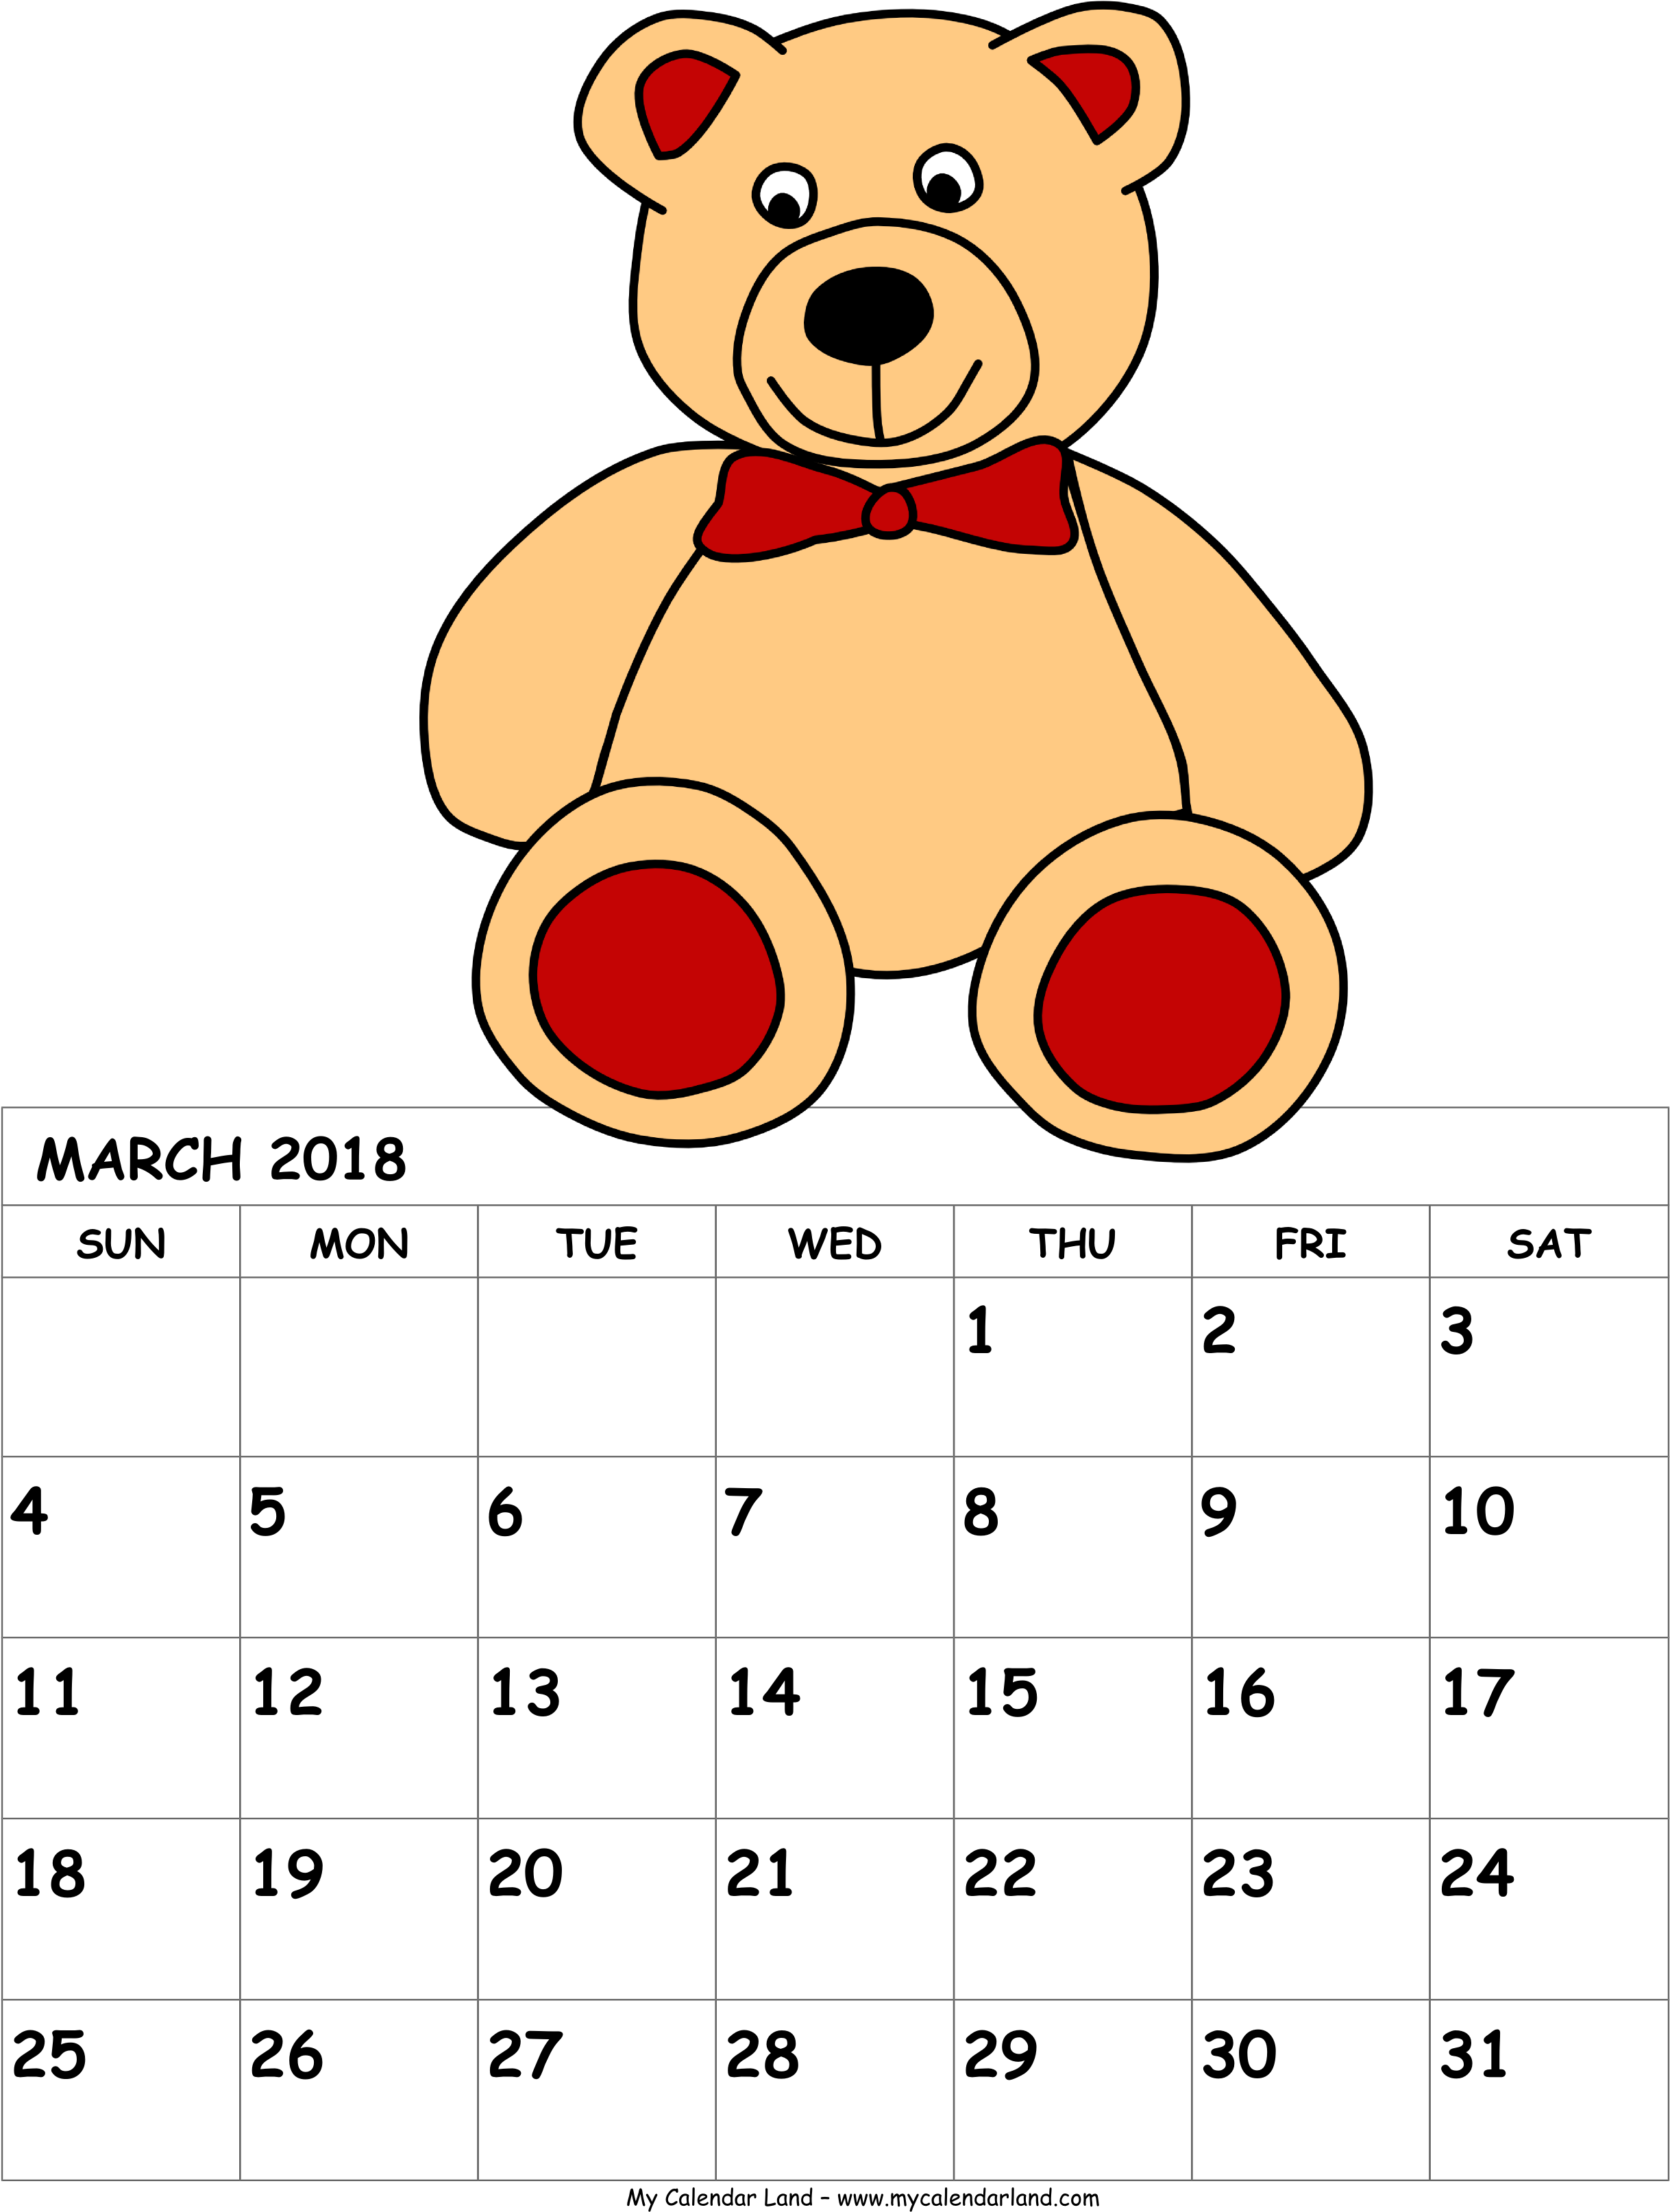 A Calendar With A Teddy Bear